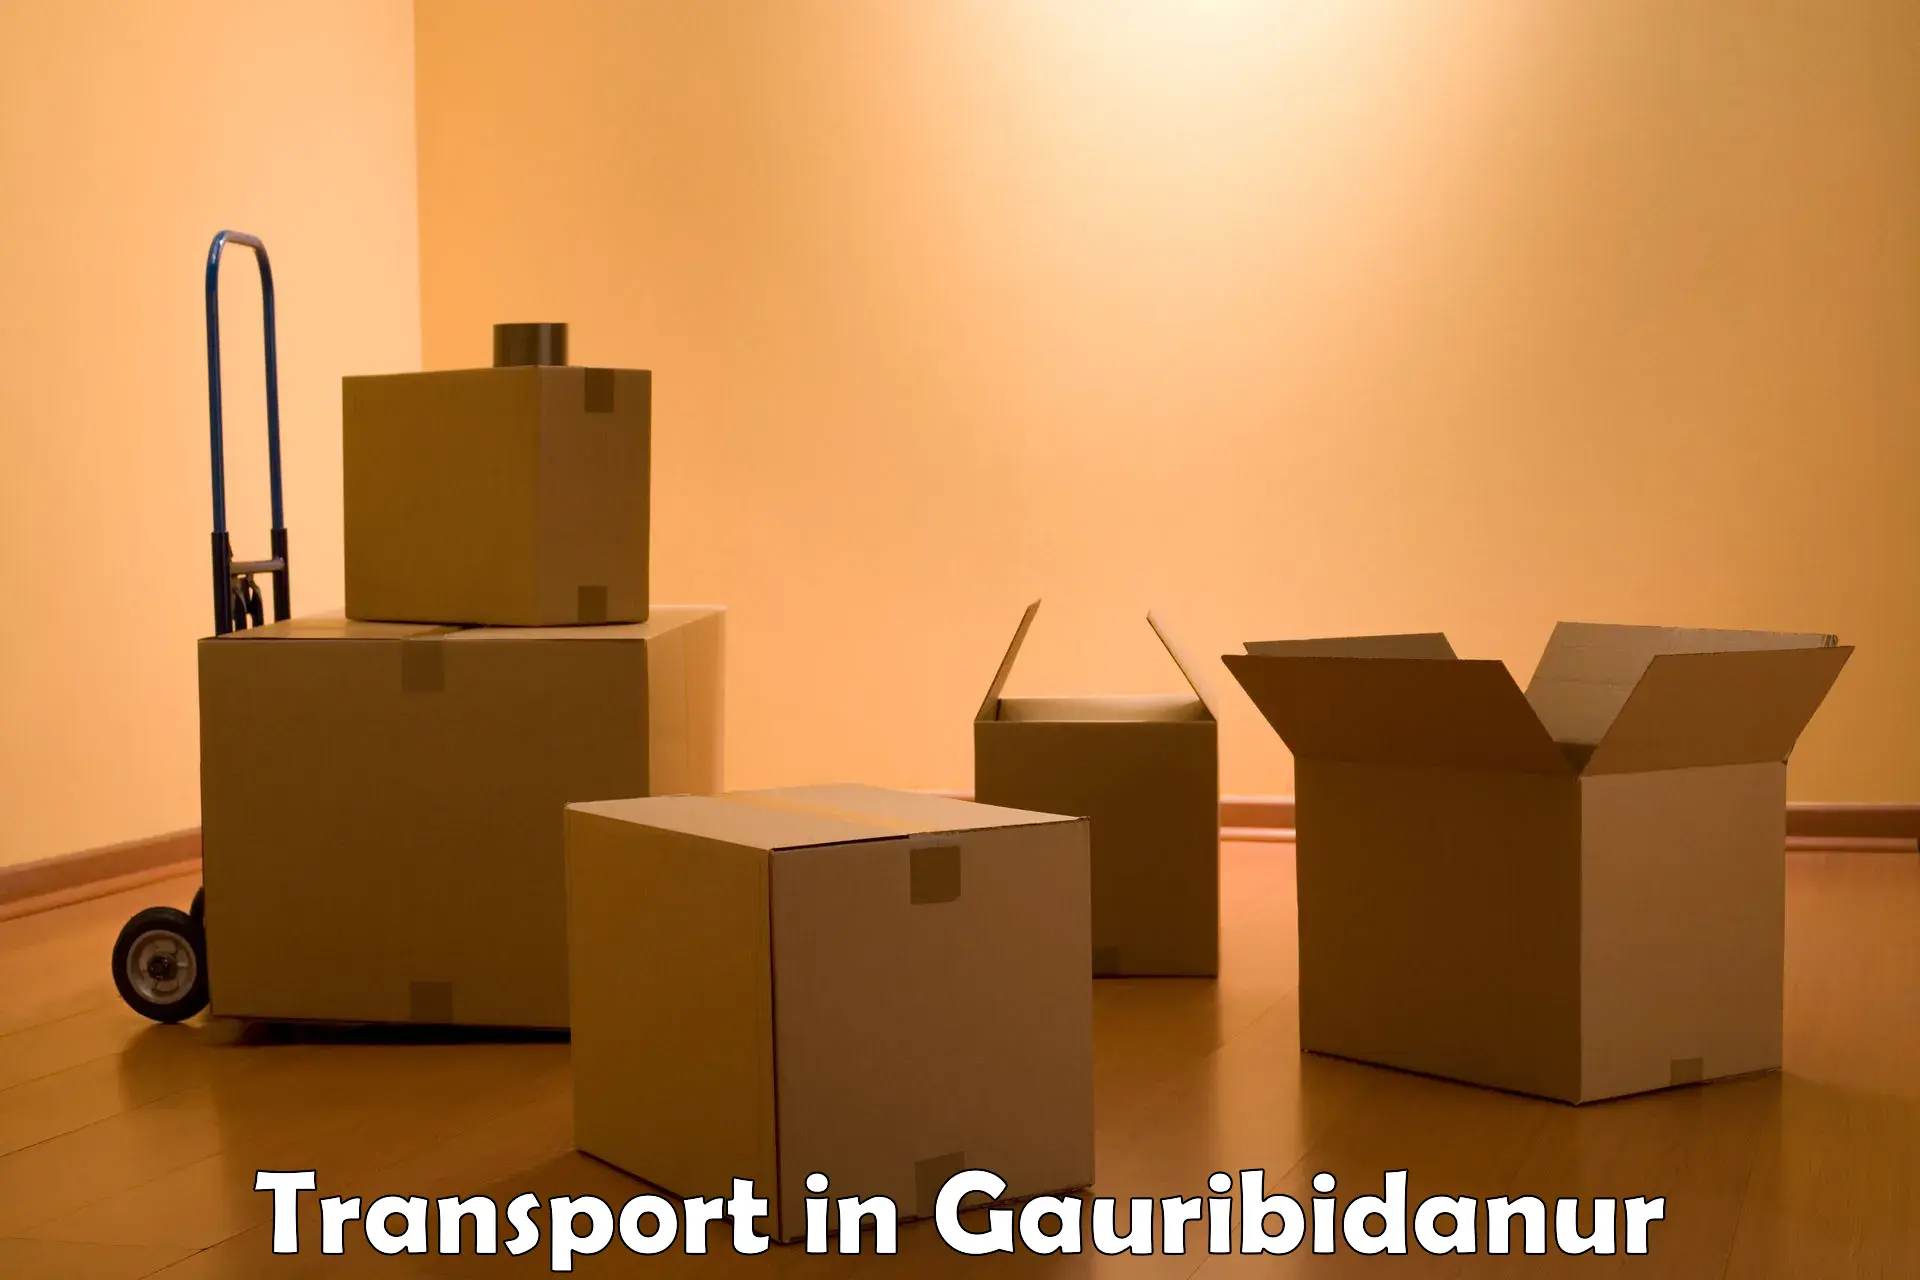 Goods transport services in Gauribidanur